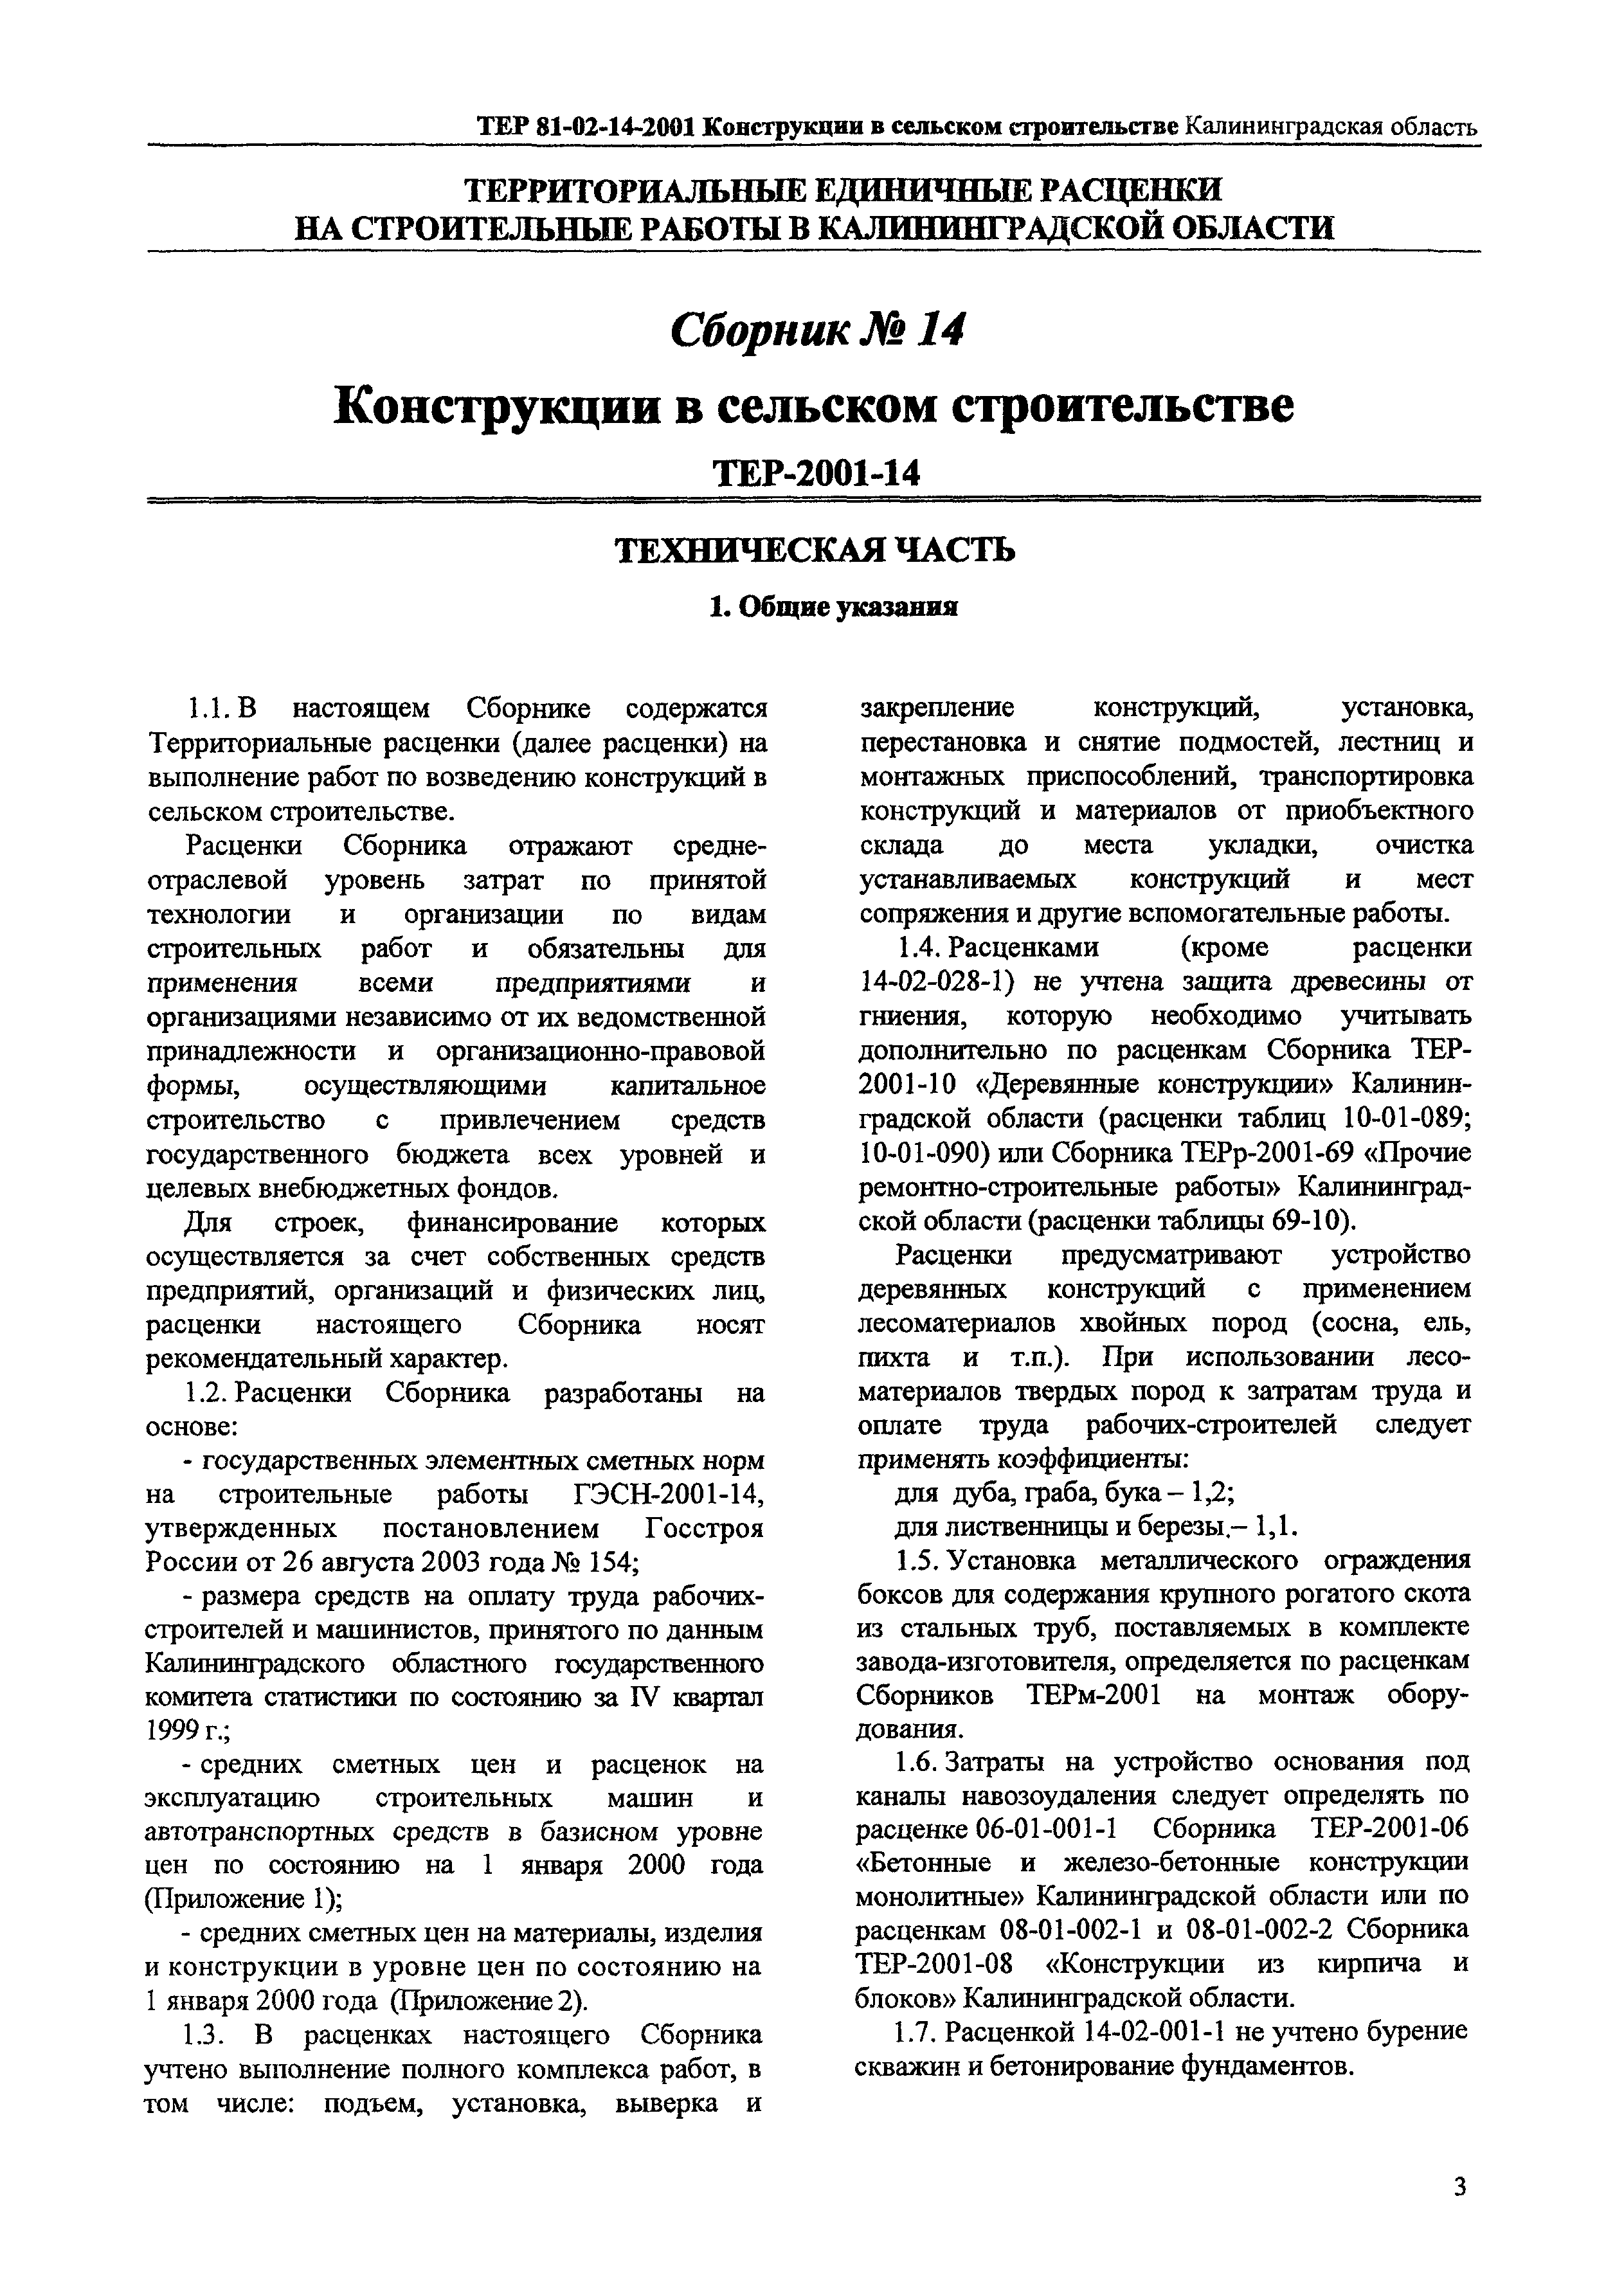 ТЕР Калининградской области 2001-14